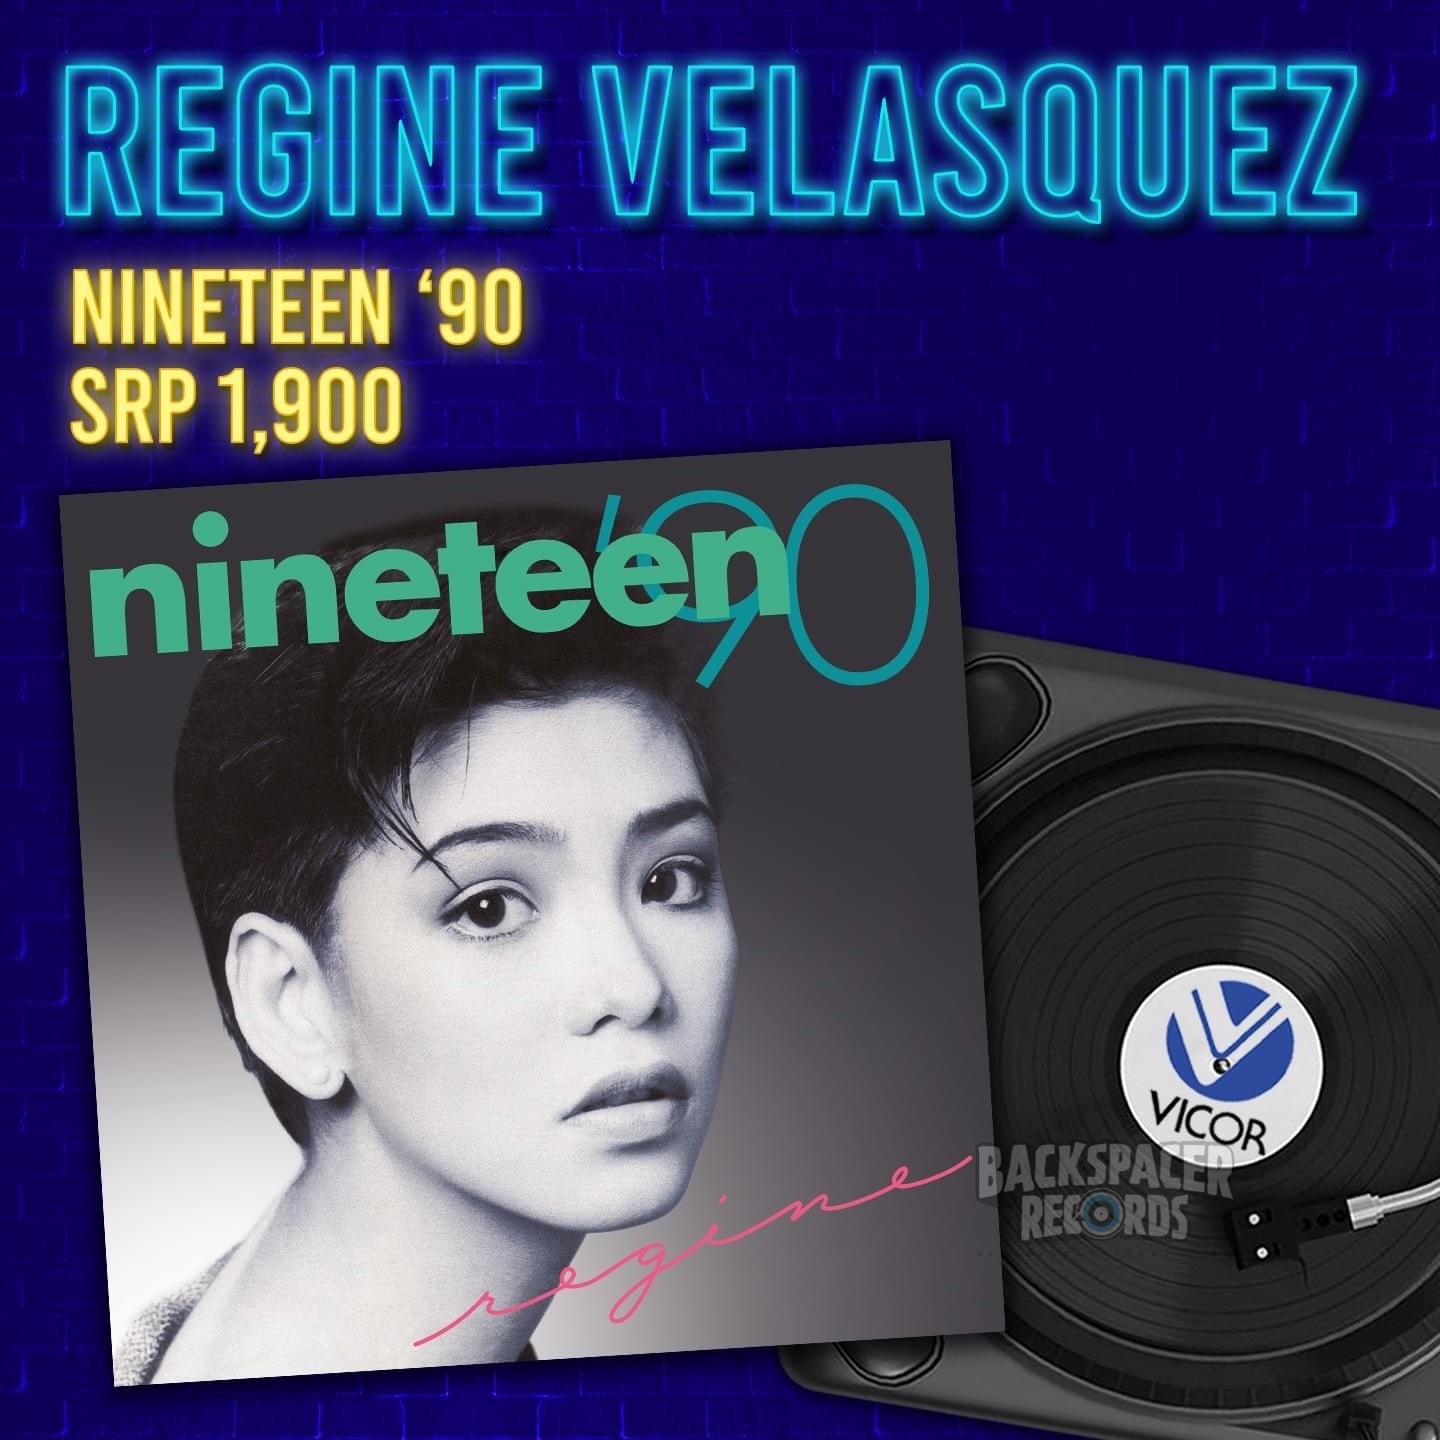 Regine Velasquez - Nineteen 90 LP (Vicor Reissue) SIGNED